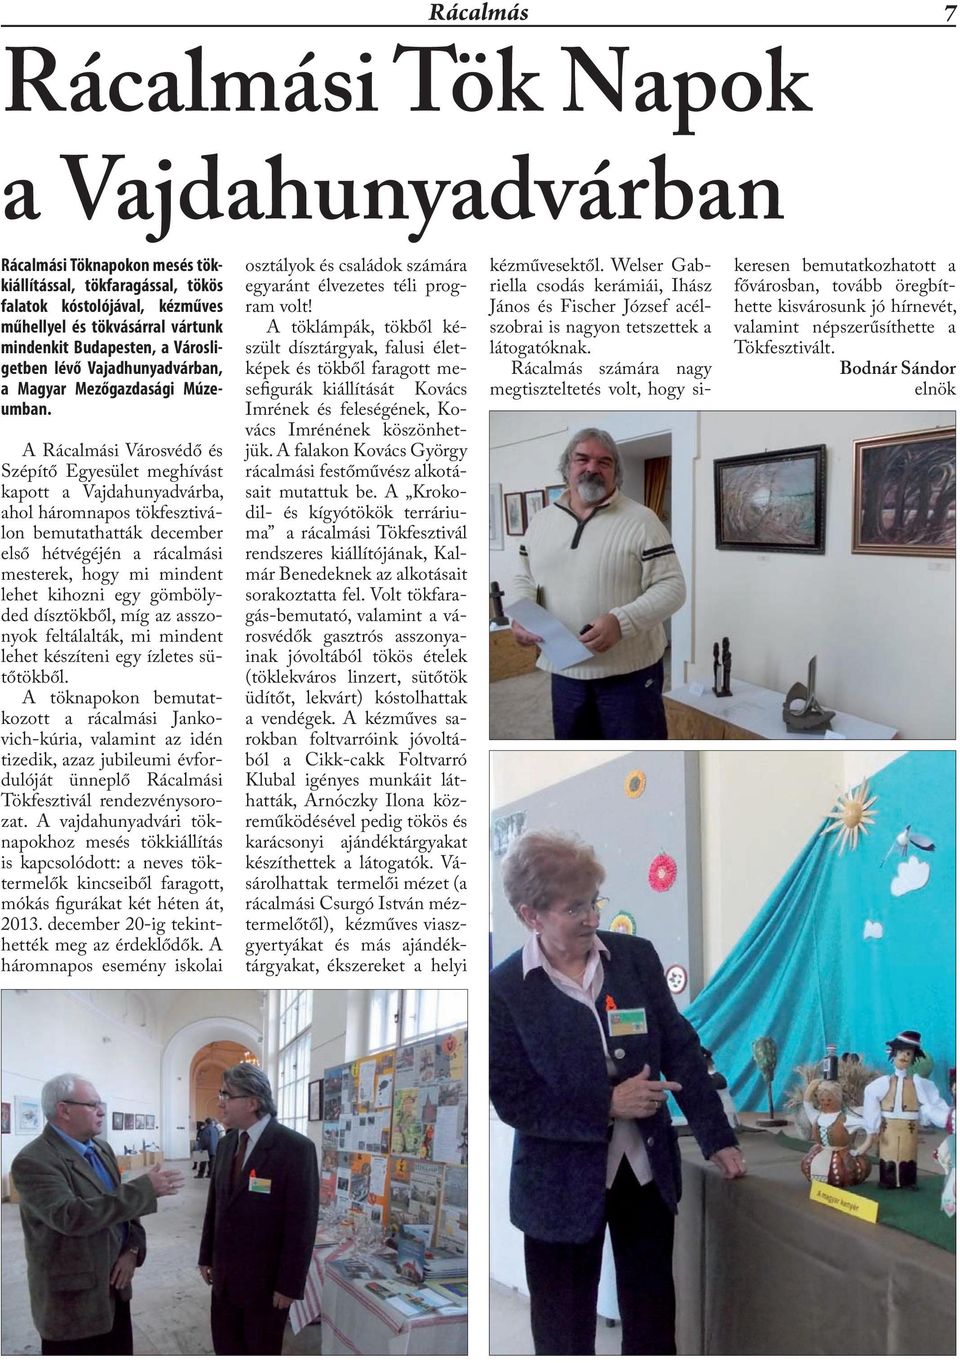 A Rácalmási Városvédő és Szépítő Egyesület meghívást kapott a Vajdahunyadvárba, ahol háromnapos tökfesztiválon bemutathatták december első hétvégéjén a rácalmási mesterek, hogy mi mindent lehet